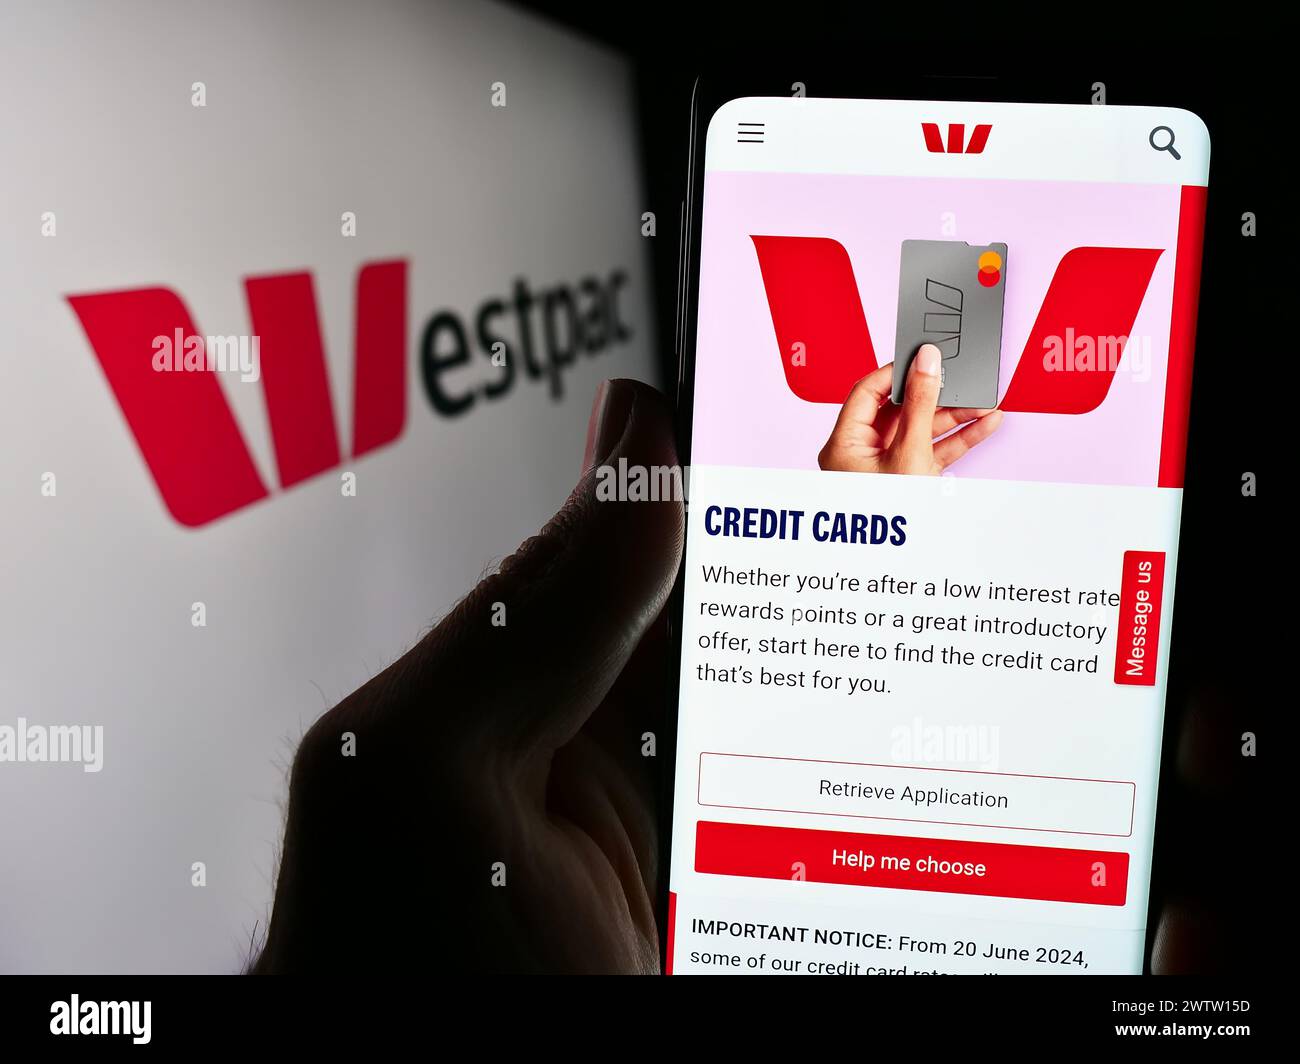 Personne tenant le téléphone portable avec la page Web de la société financière australienne Westpac Banking Corporation avec le logo. Concentrez-vous sur le centre de l'écran du téléphone. Banque D'Images